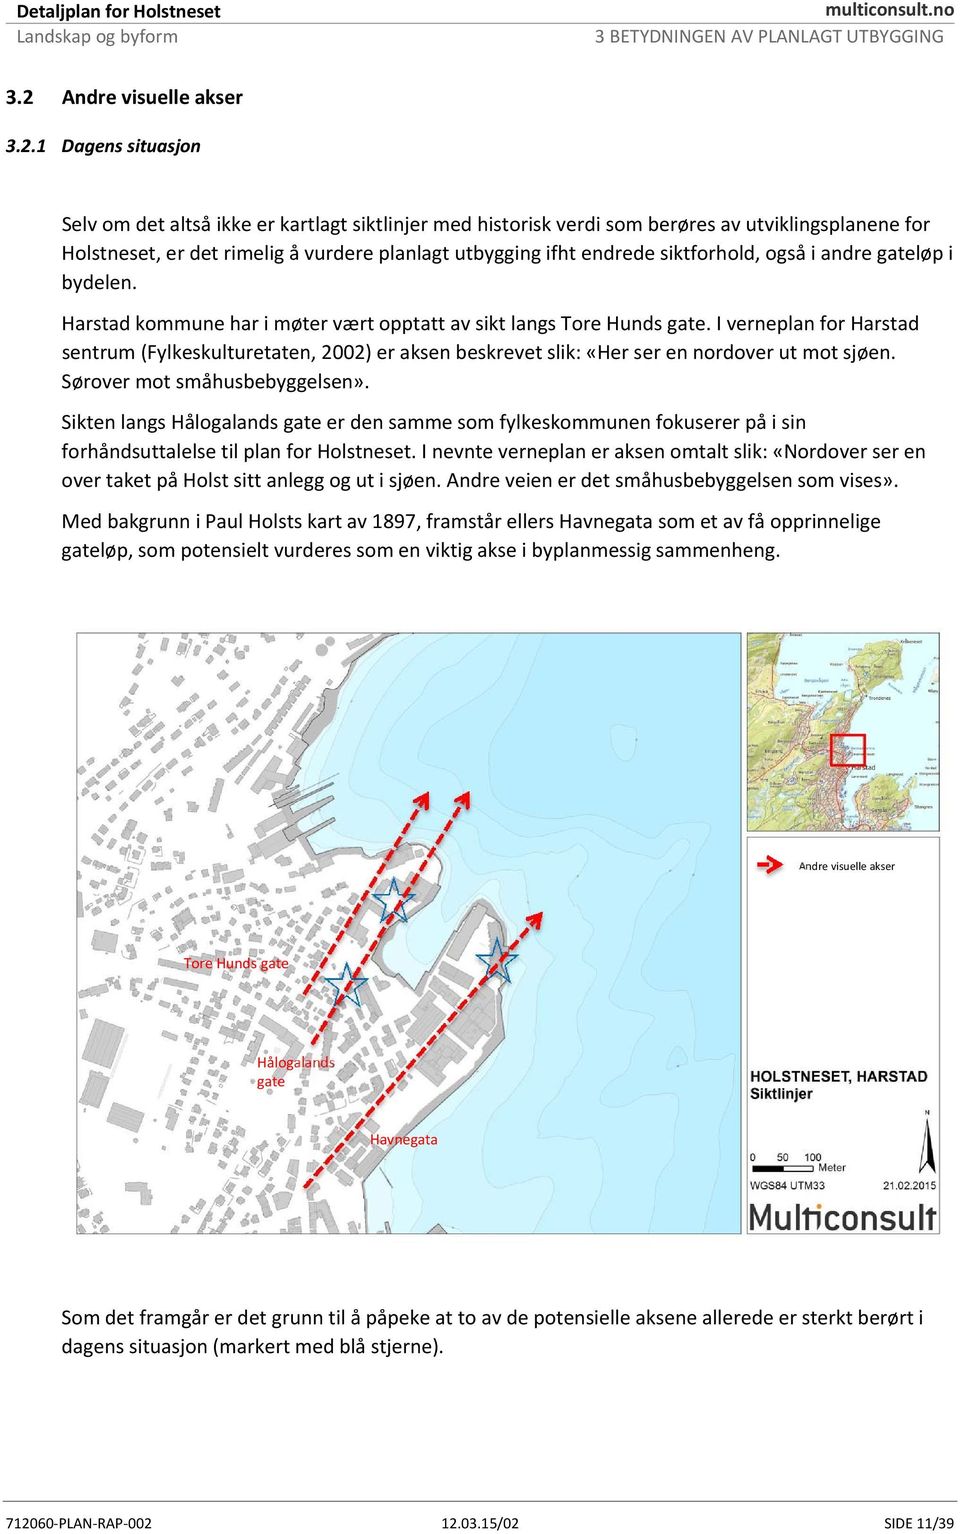 I verneplan for Harstad sentrum (Fylkeskulturetaten, 2002) er aksen beskrevet slik: «Her ser en nordover ut mot sjøen. Sørover mot småhusbebyggelsen».